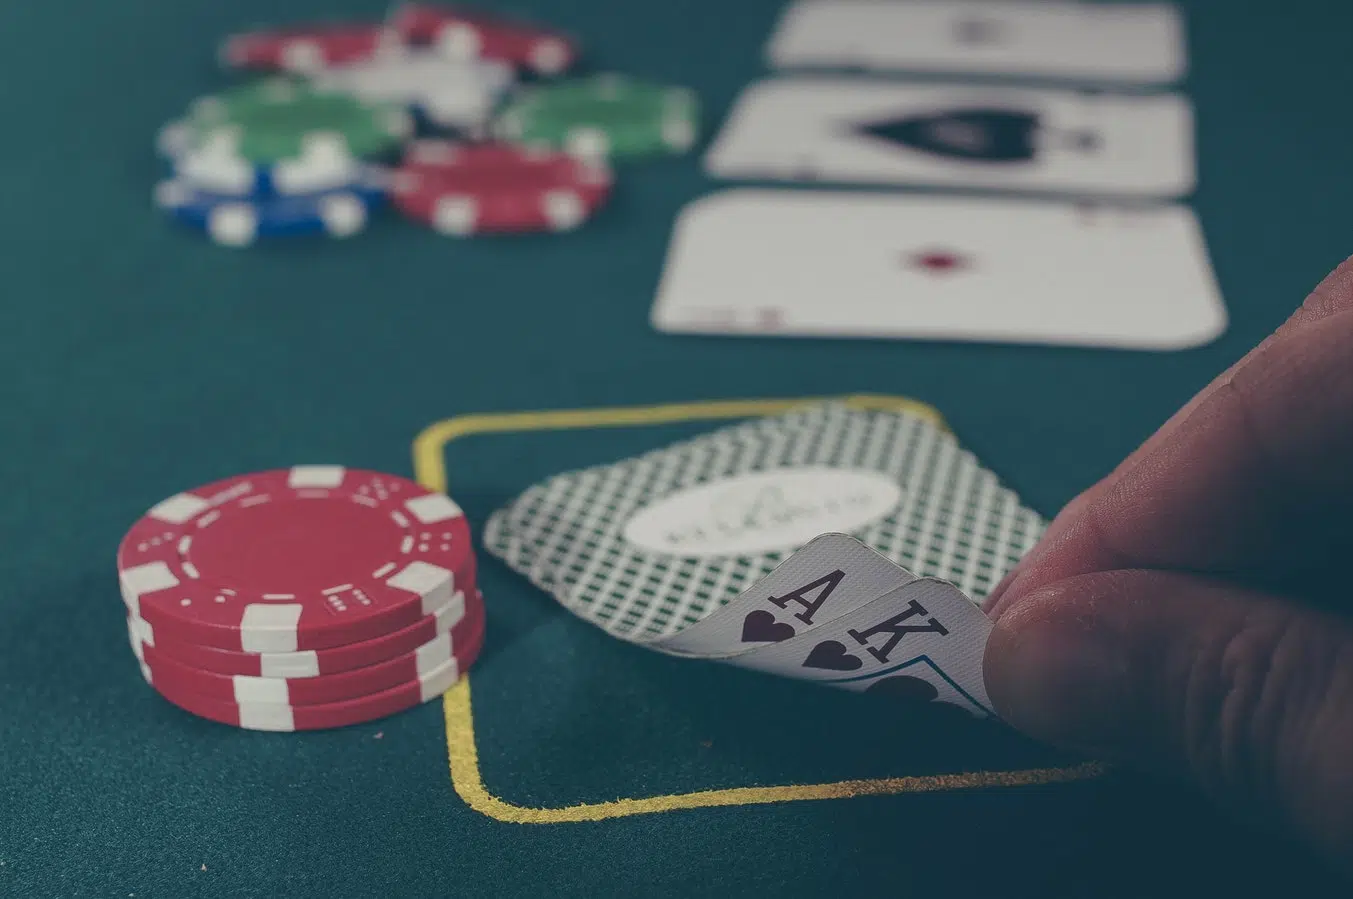 Comment expliquer la hausse de popularité incroyable du poker ?